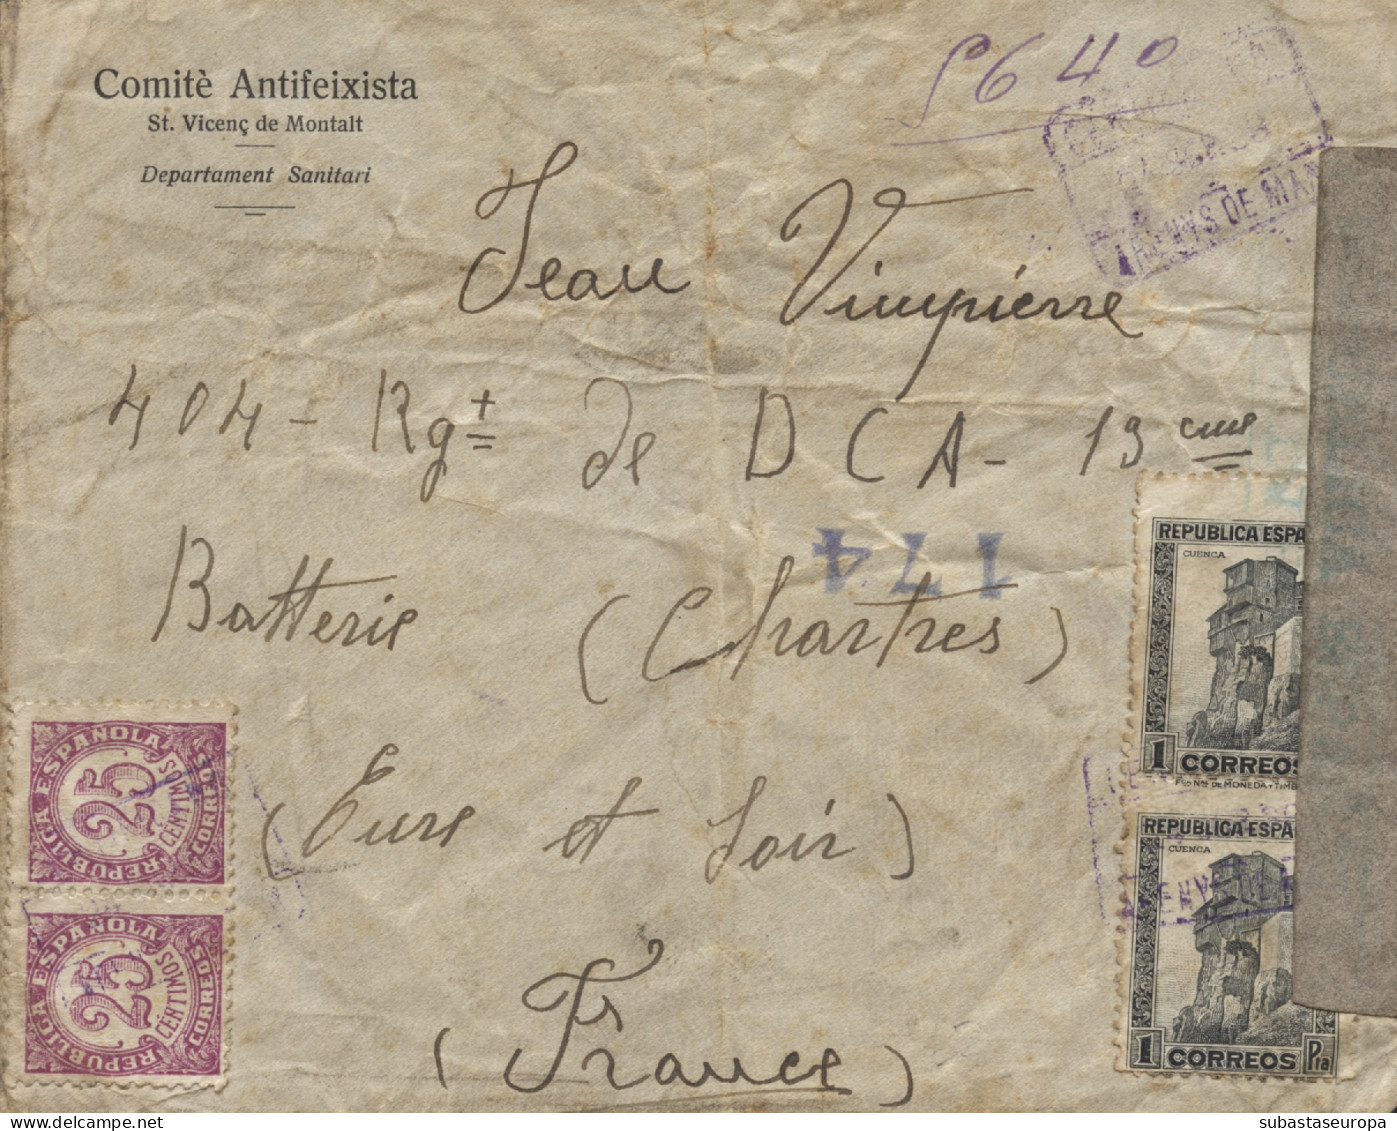 Carta Certificada Circulada De Sant Vicenç De Montalt A Francia, El Año 1938. El Sobre Lleva Membrete "Comité Antifeixis - Marcas De Censura Republicana